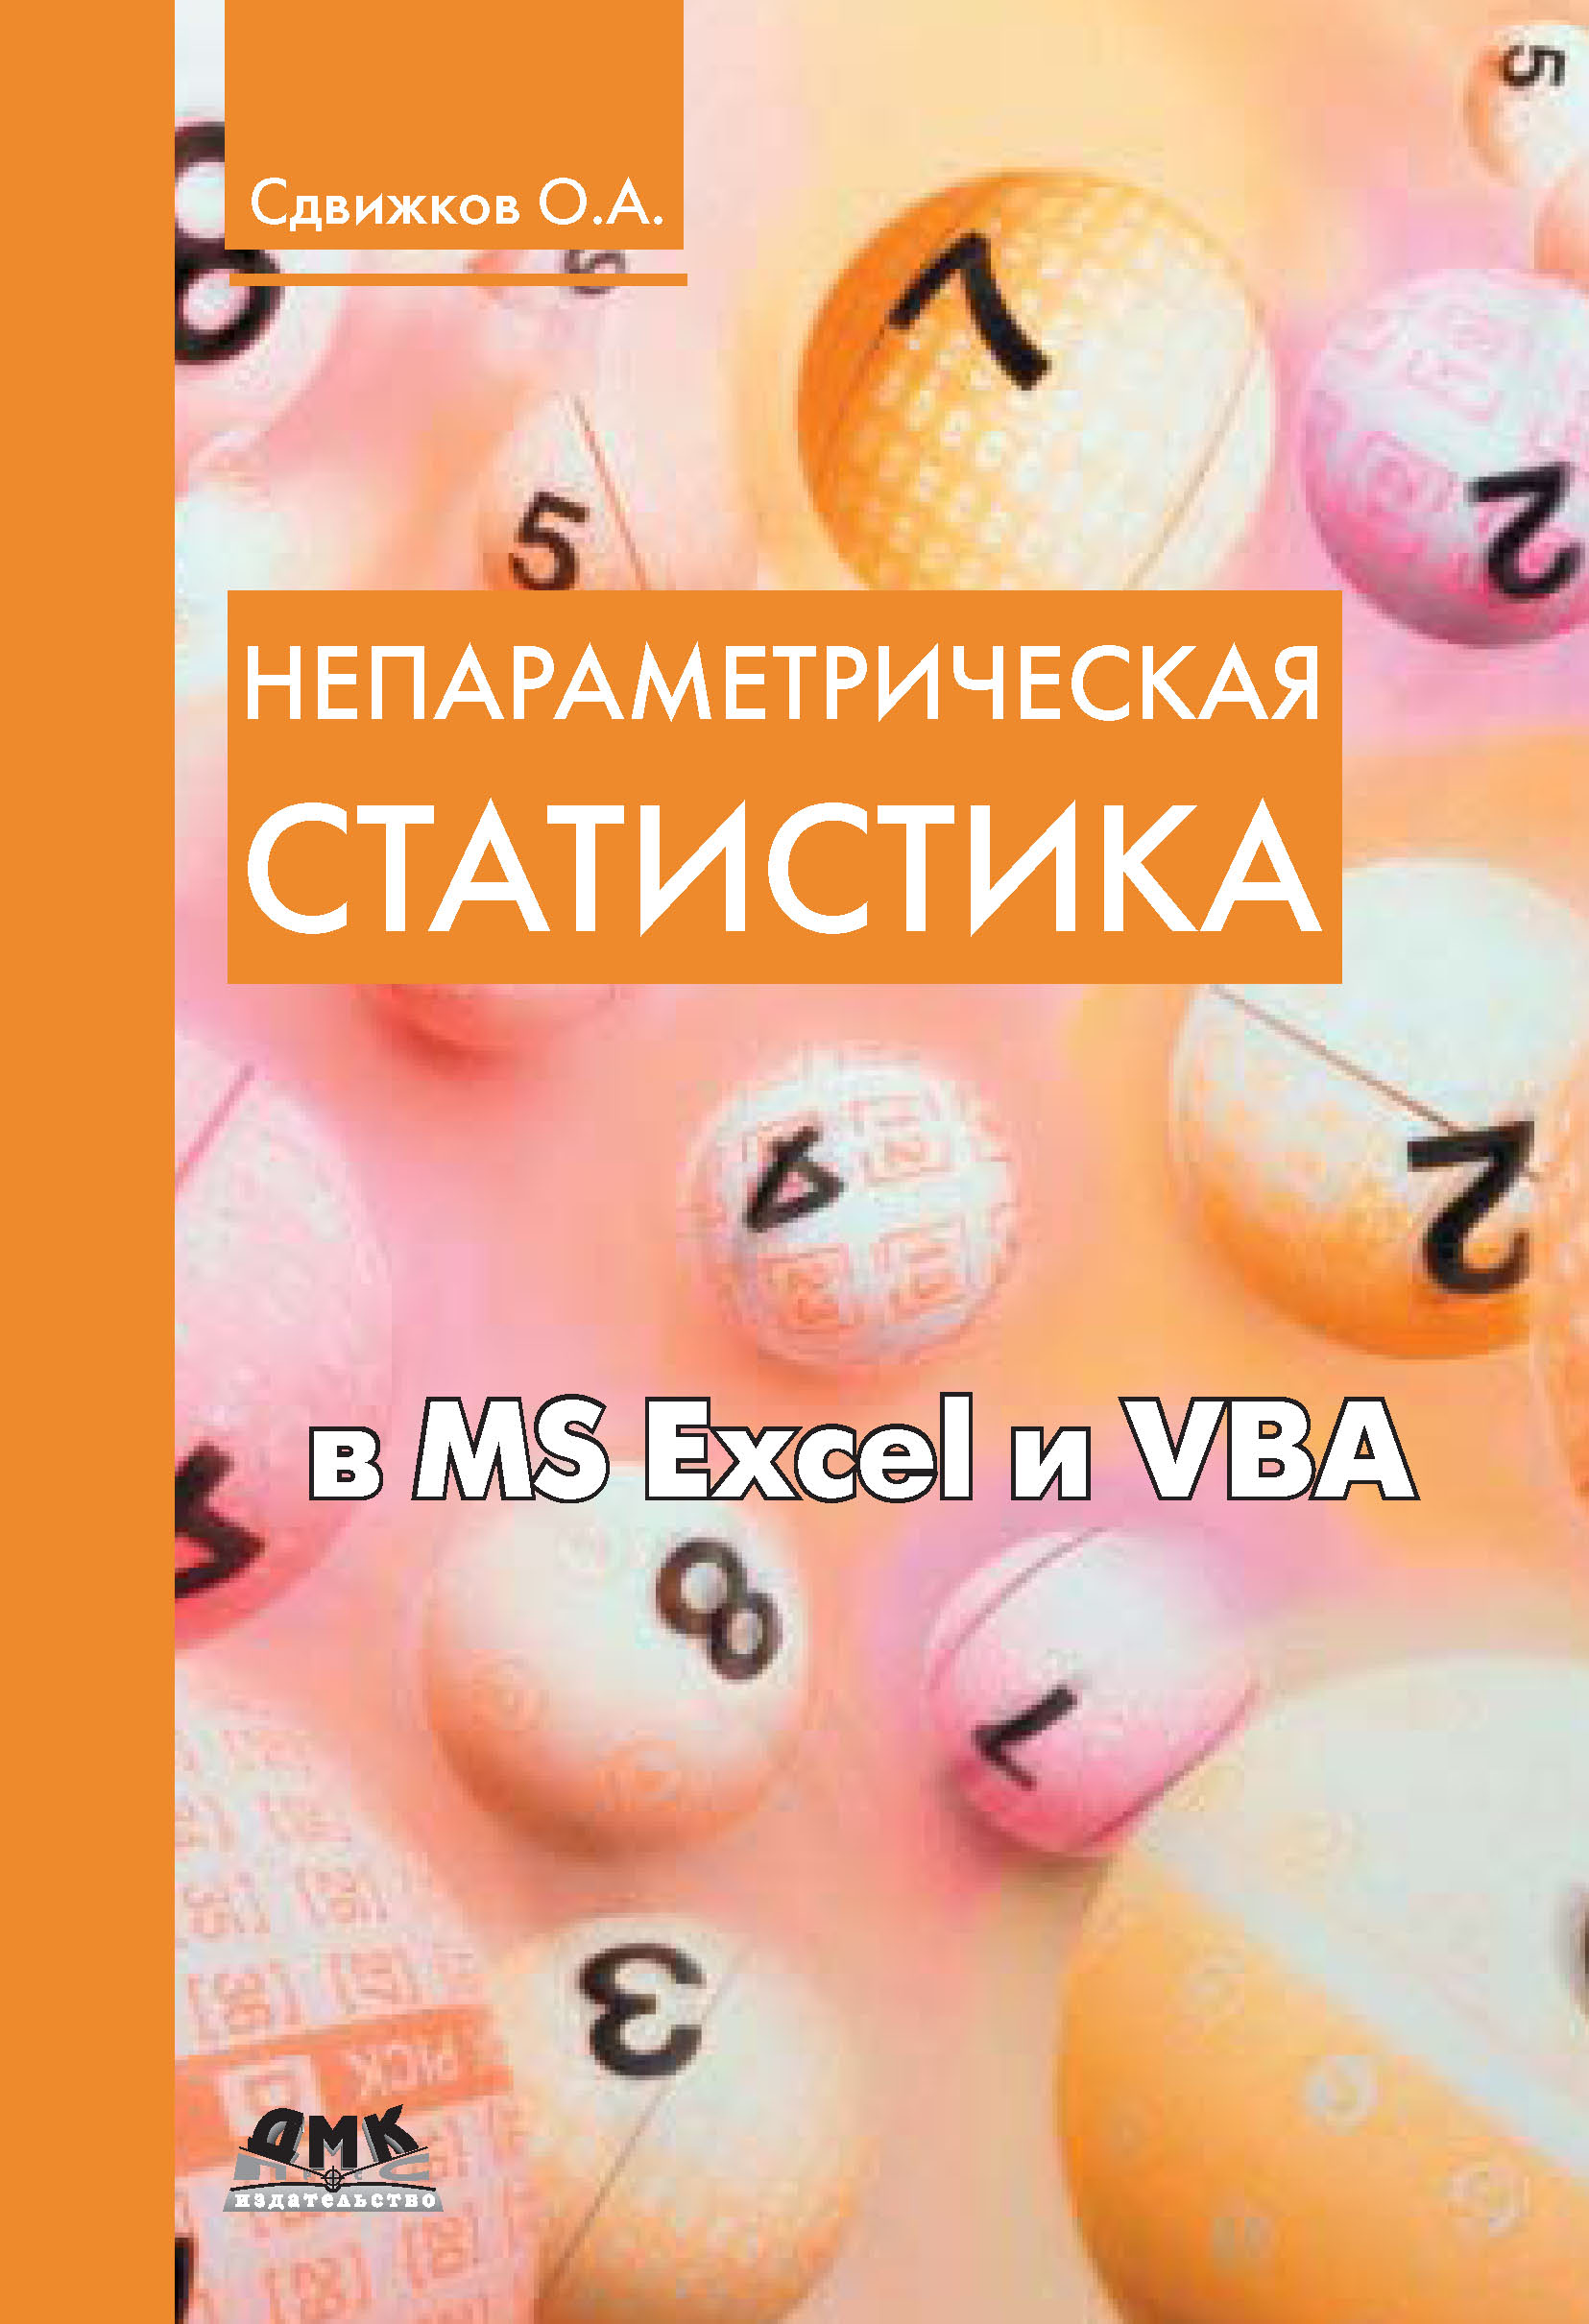 Книга  Непараметрическая статистика в MS Excel и VBA созданная О. А. Сдвижков может относится к жанру математика, программы. Стоимость электронной книги Непараметрическая статистика в MS Excel и VBA с идентификатором 10016569 составляет 239.00 руб.